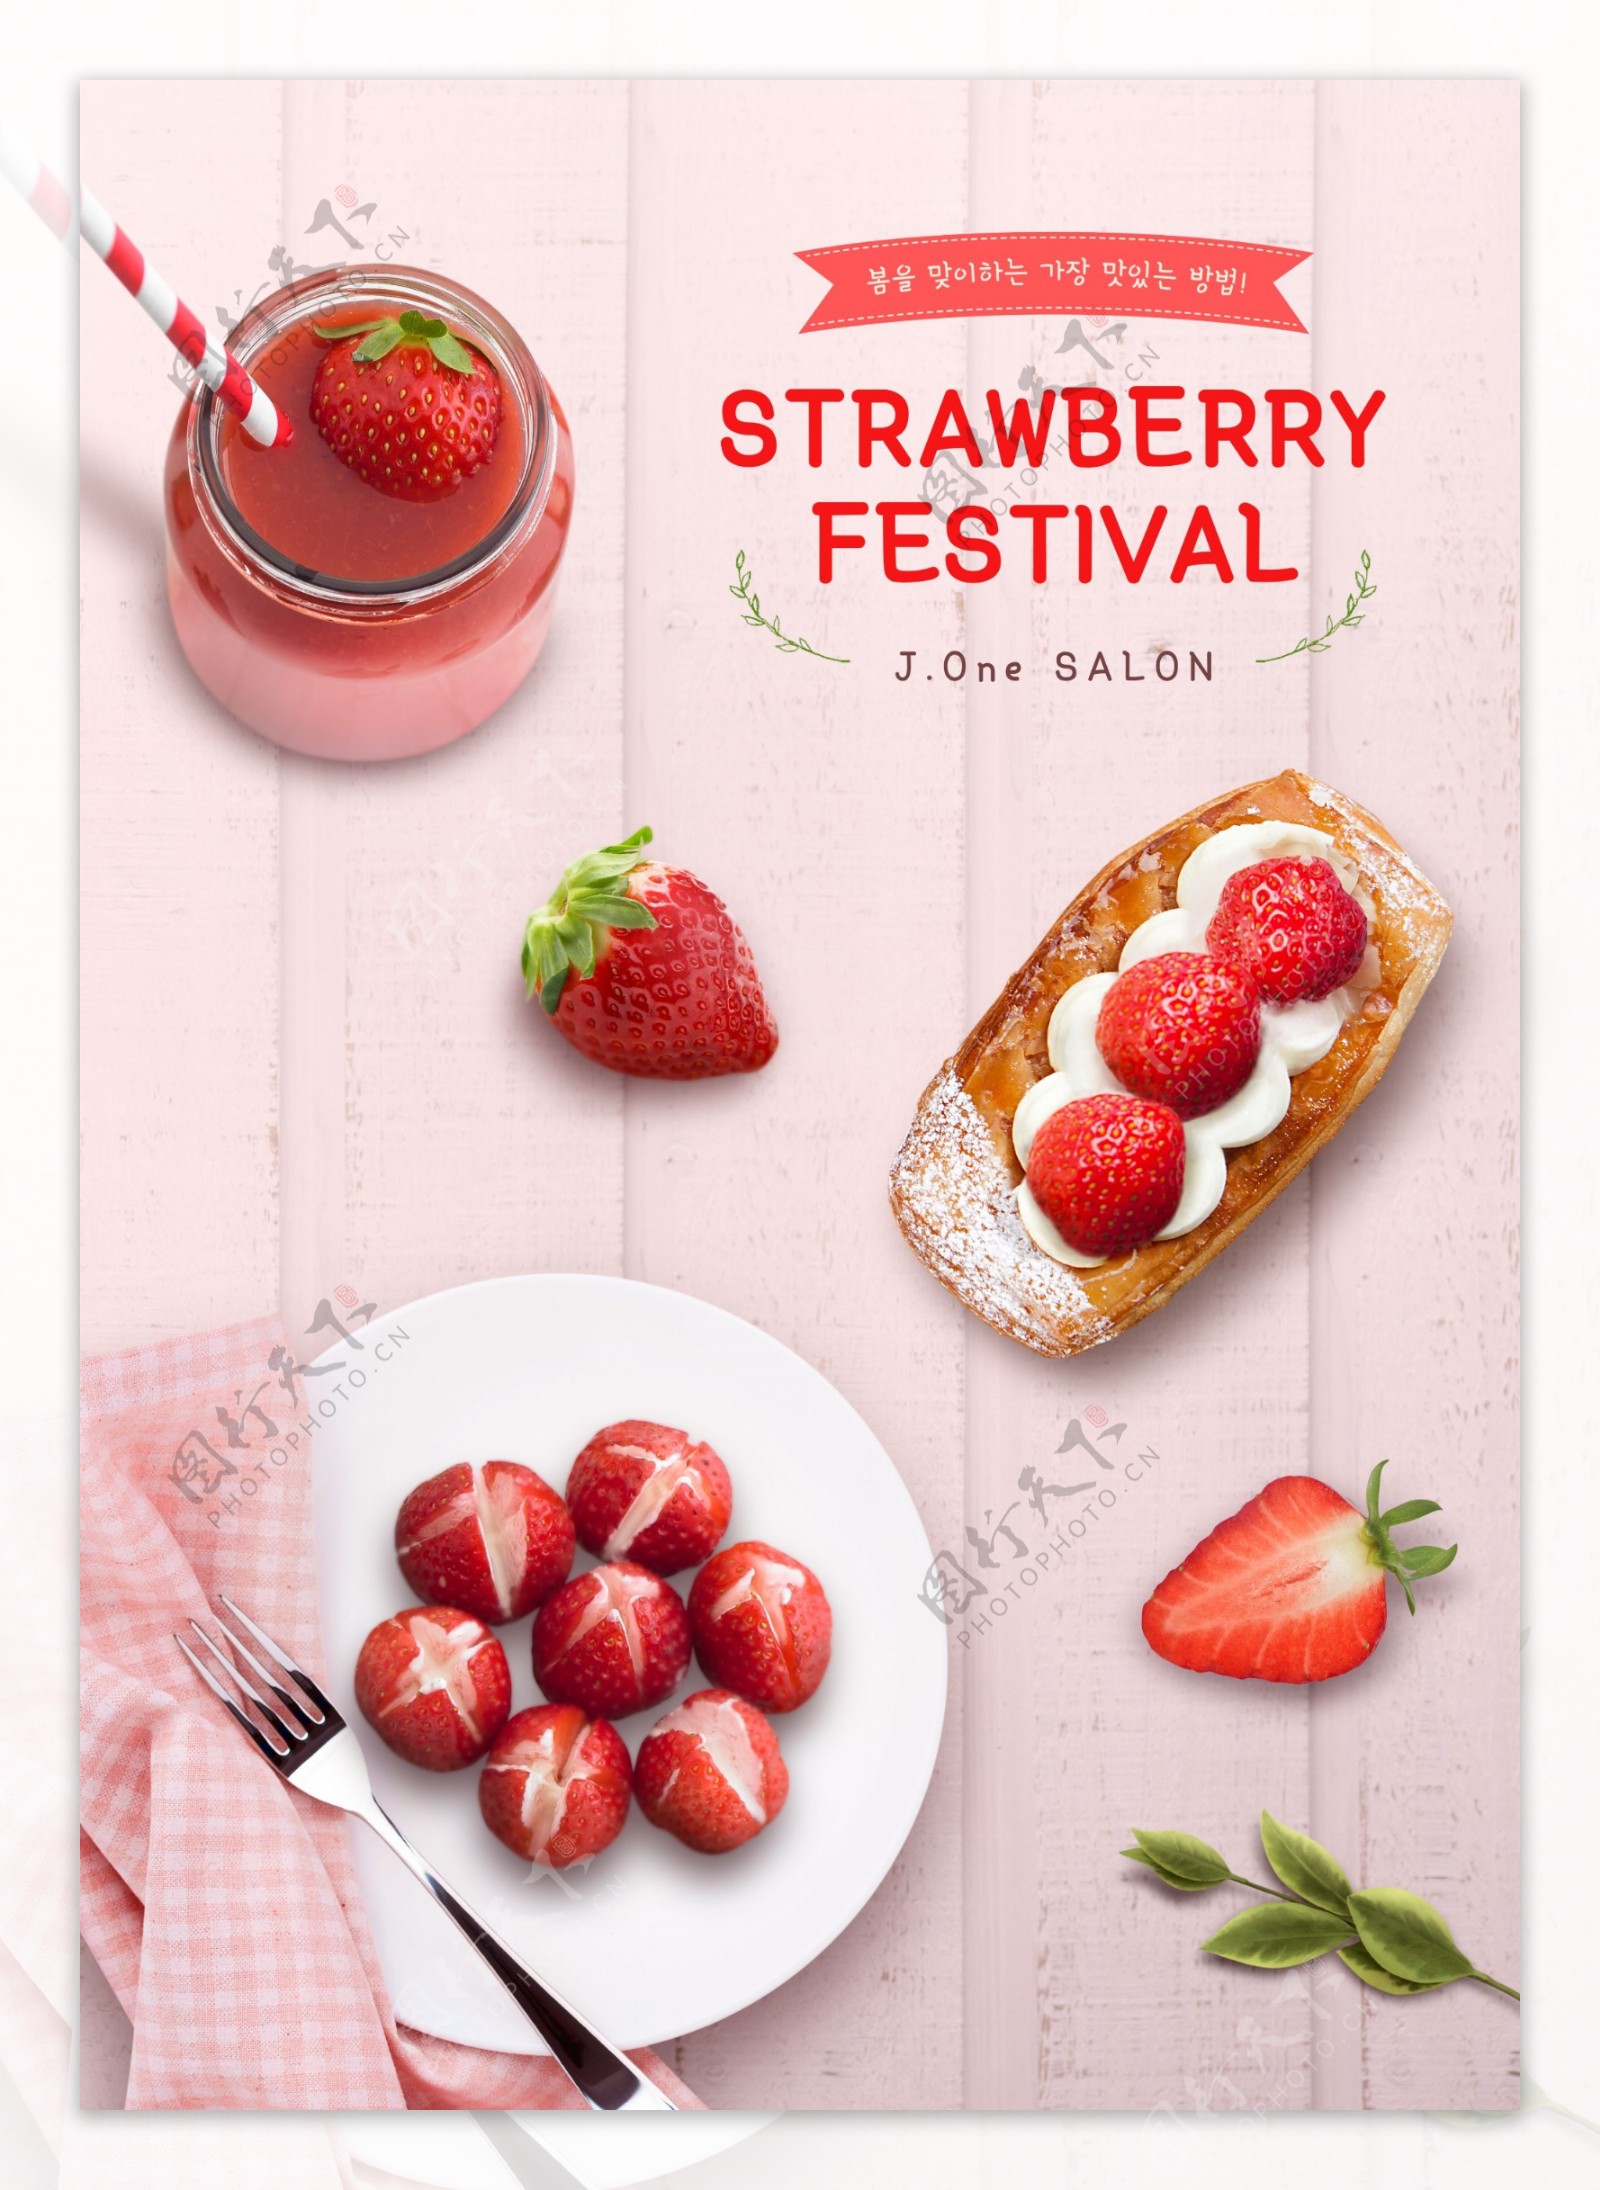 创意草莓点心下午茶美食海报设计